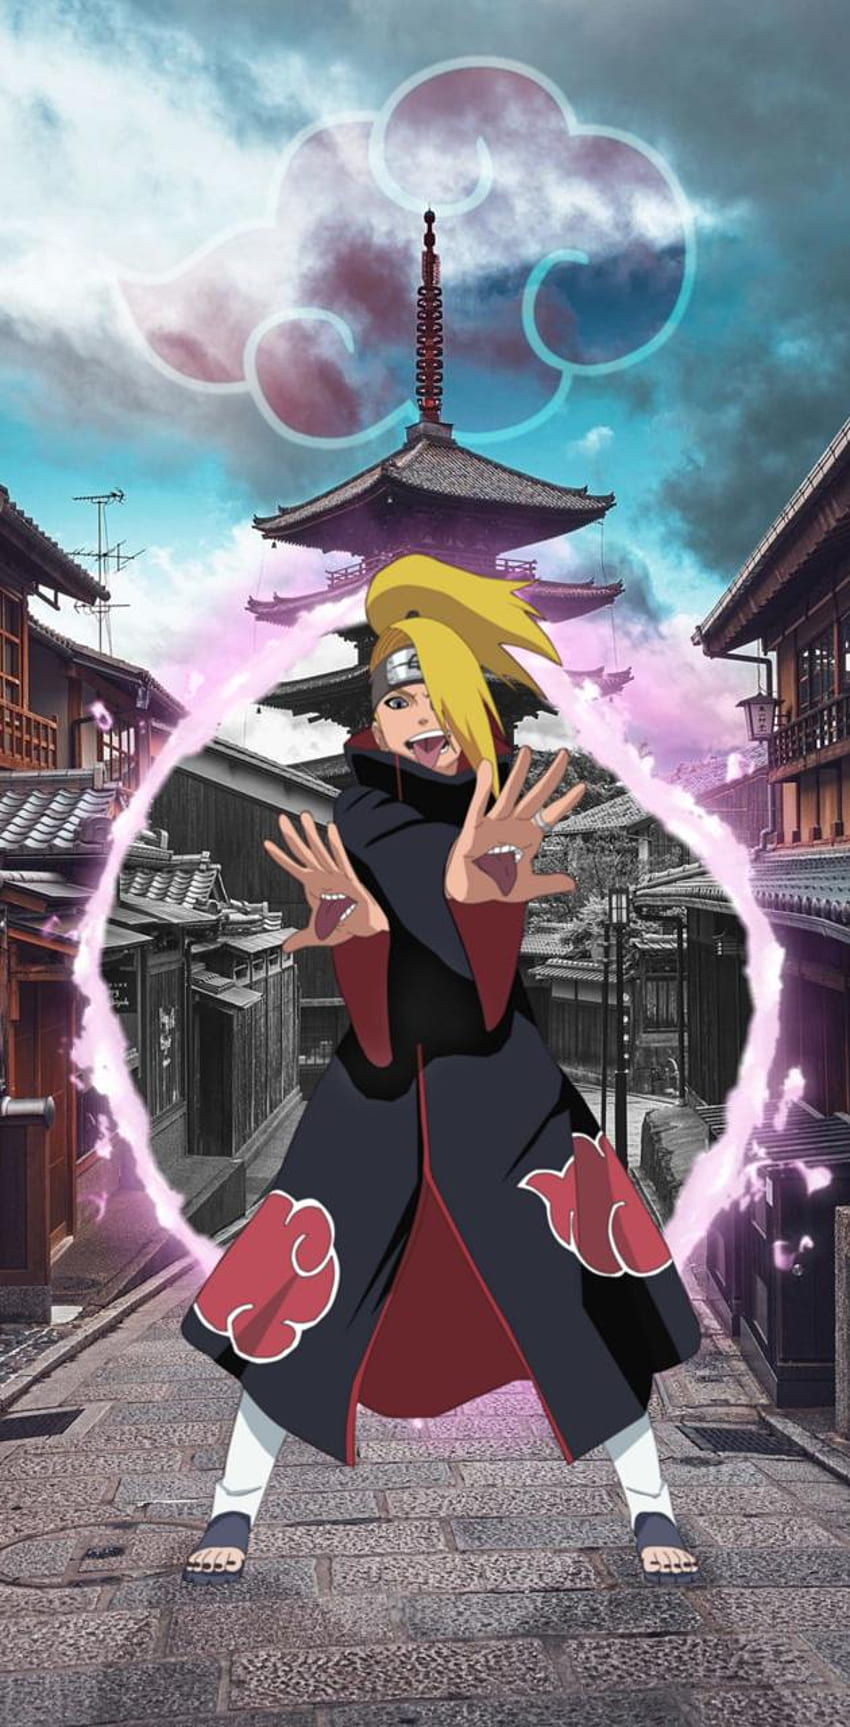 Hình nền  Anime Naruto Shippuuden Tobi Deidara Akatsuki Ảnh chụp màn  hình 1680x1050 px Hình nền máy tính 1680x1050  wallup  586884  Hình nền  đẹp hd  WallHere